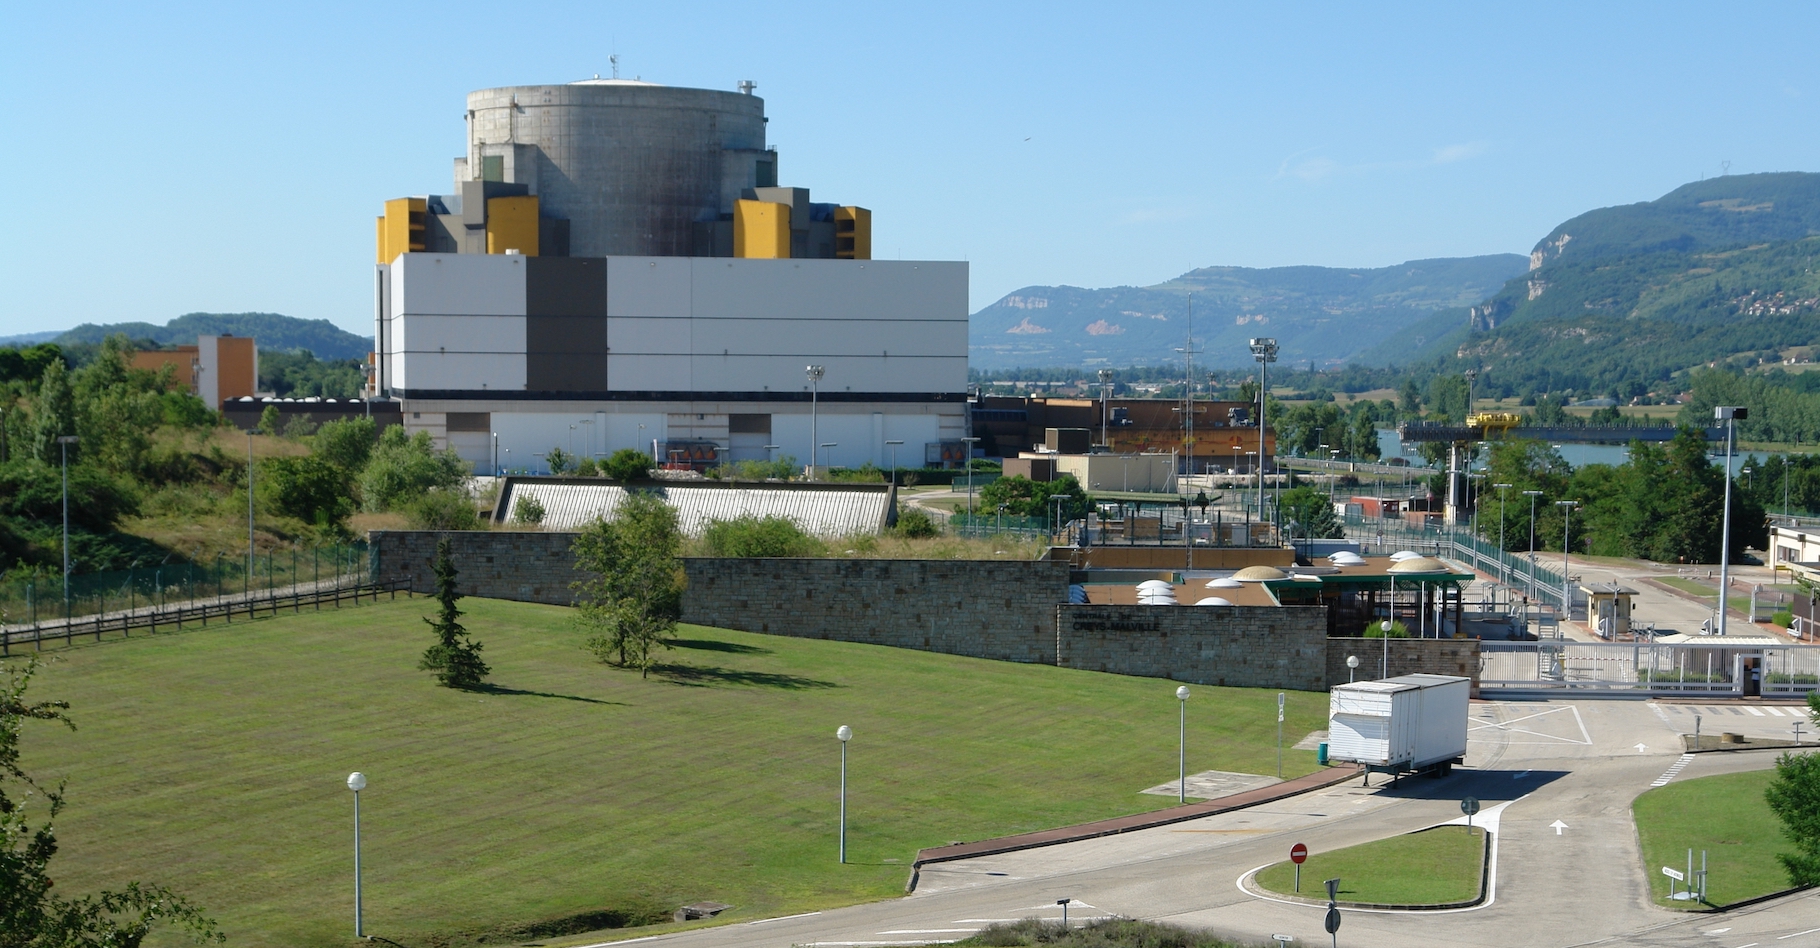 Les équipes d’EDF travaillent depuis plusieurs années au démantèlement du réacteur Superphénix. © I, Yann, Wikipedia, CC by-sa 3.0